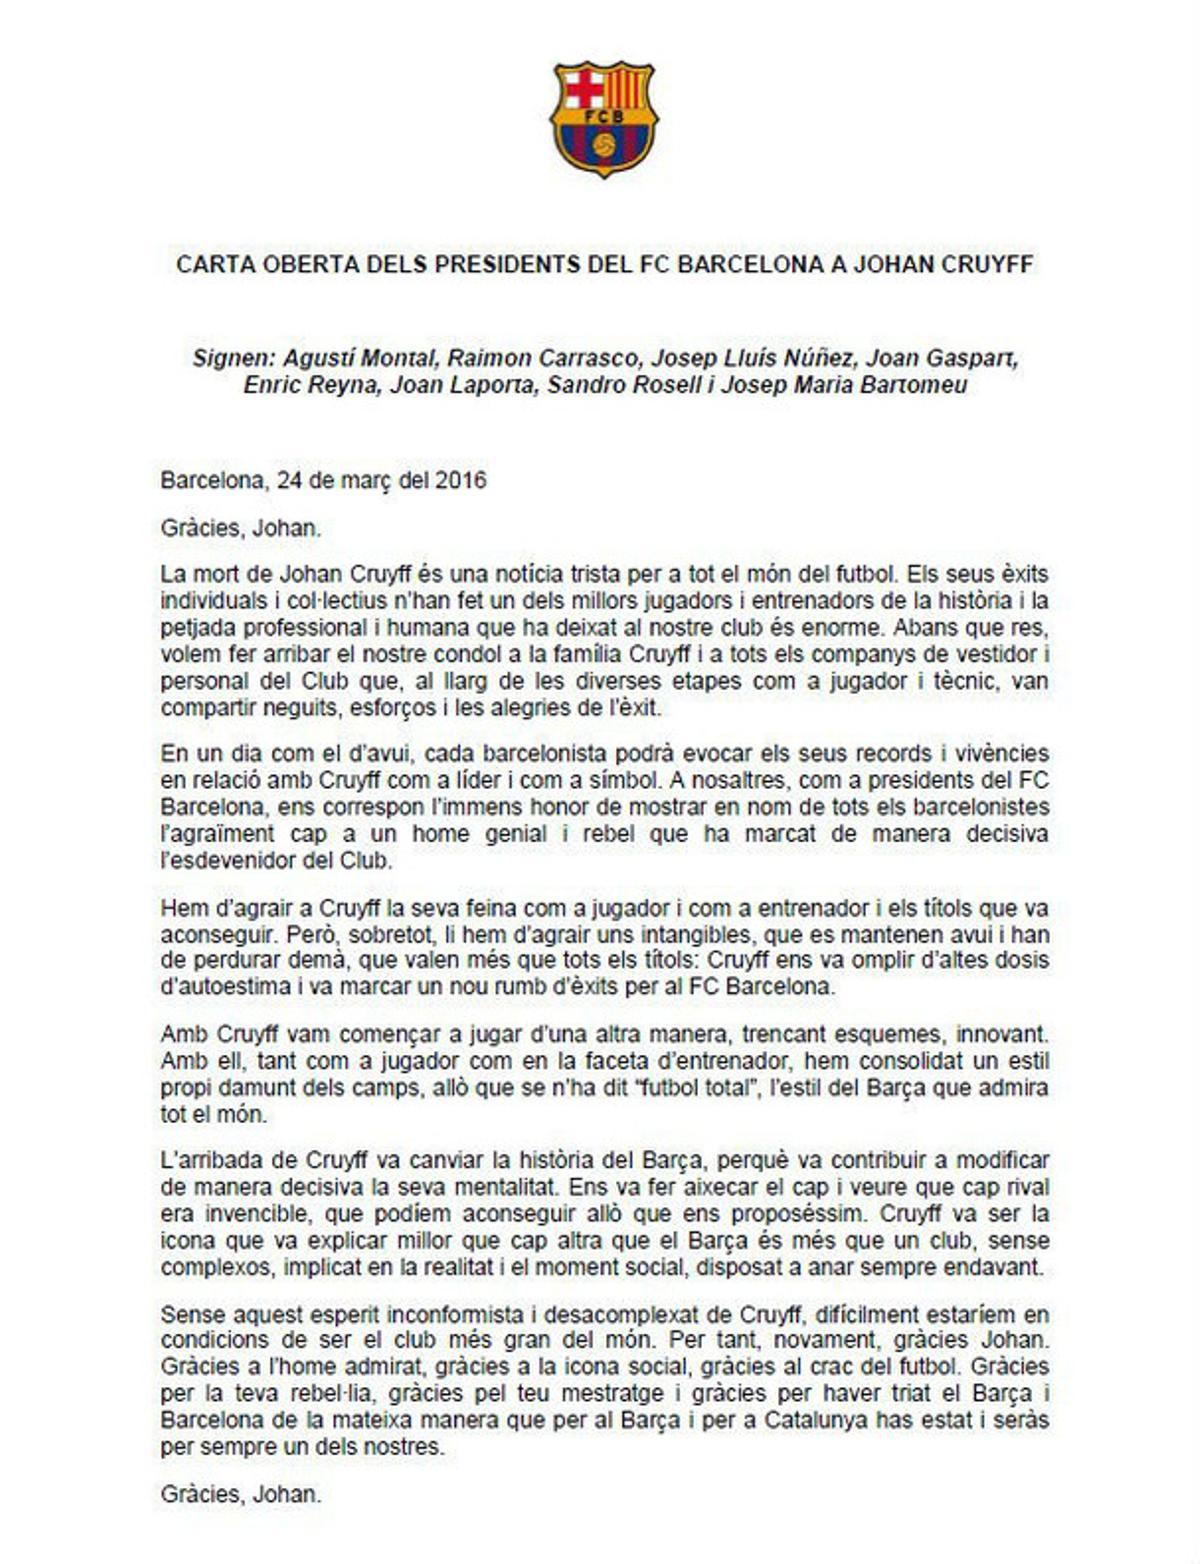 La carta dels presidents del Barça a Cruyff, publicada el dia de la seva mort.